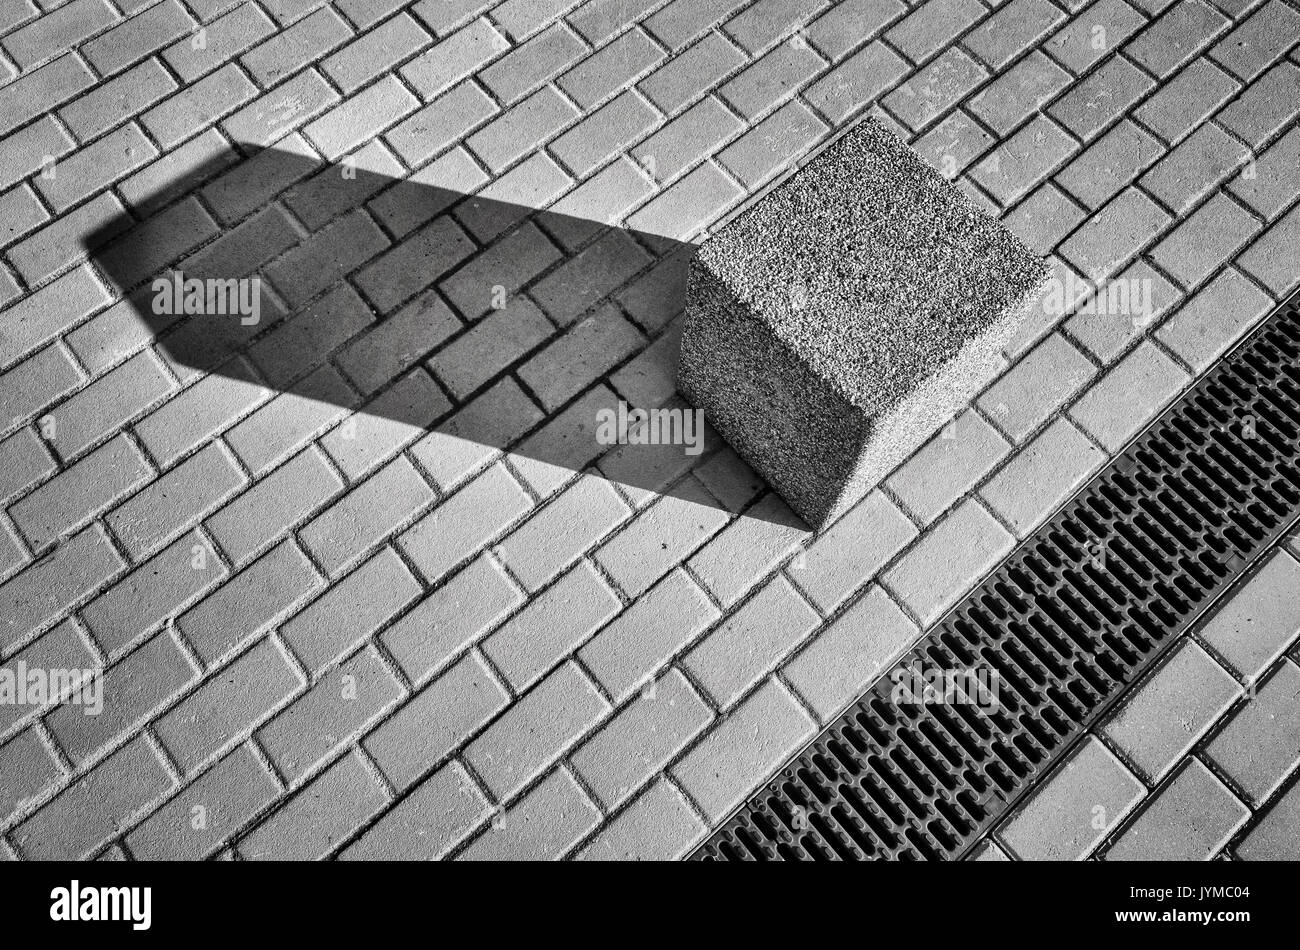 Immagine in bianco e nero di una strada e blocchi di cemento sulla pavimentazione, abstract background urbano. Foto Stock